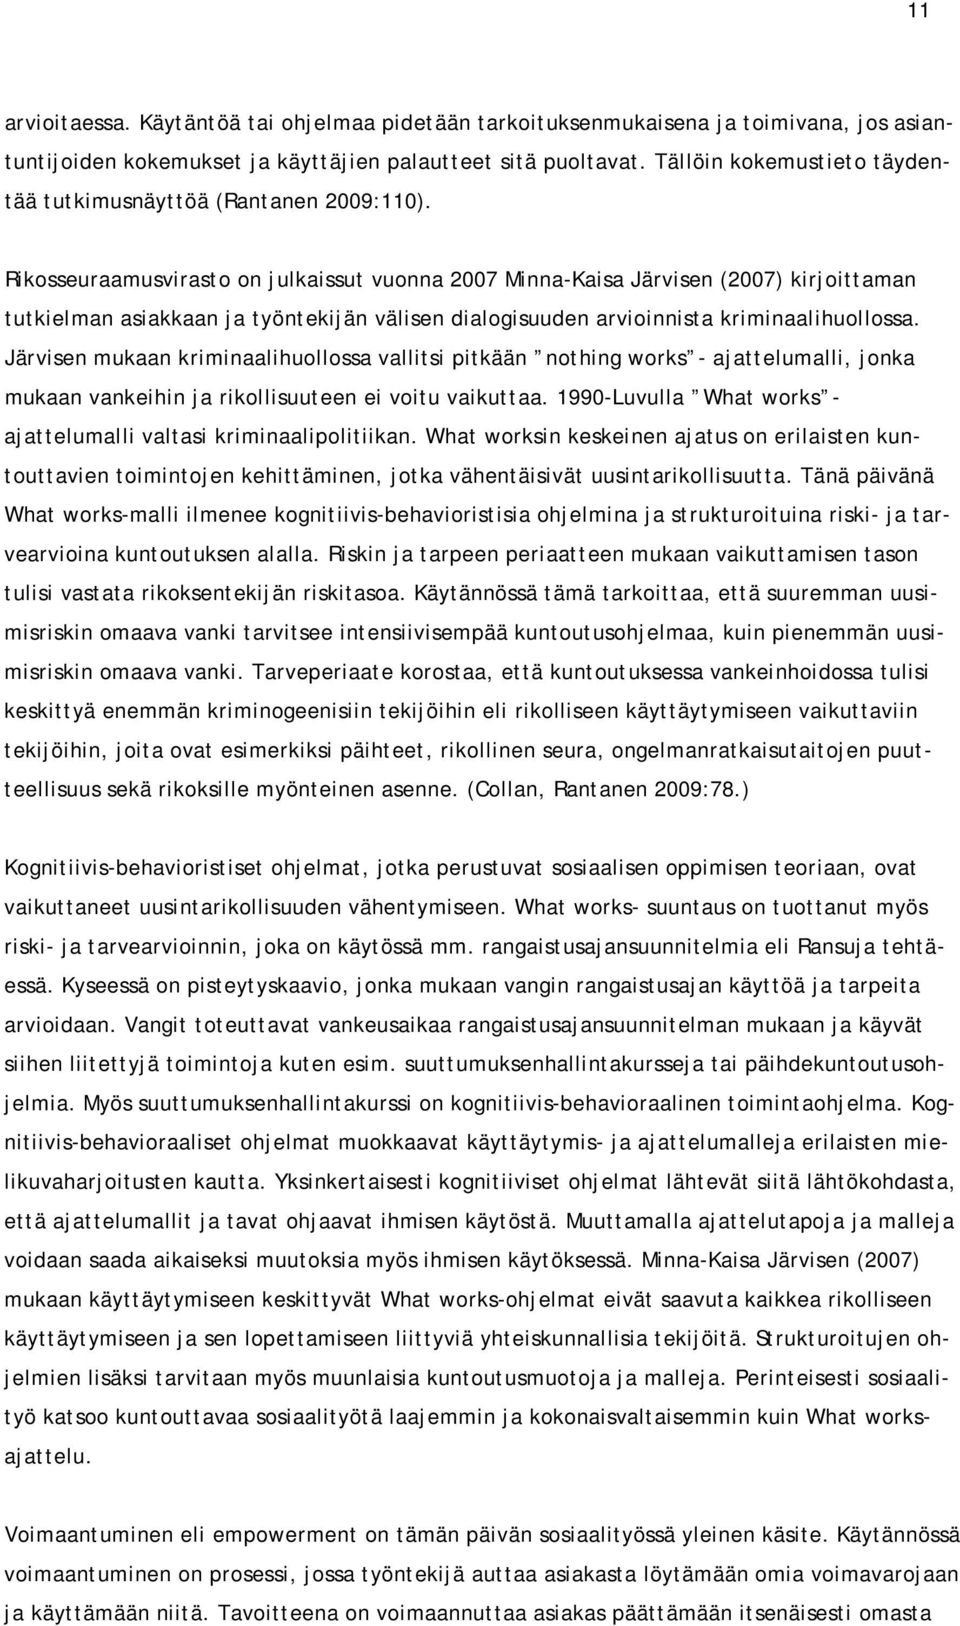 Rikosseuraamusvirasto on julkaissut vuonna 2007 Minna-Kaisa Järvisen (2007) kirjoittaman tutkielman asiakkaan ja työntekijän välisen dialogisuuden arvioinnista kriminaalihuollossa.